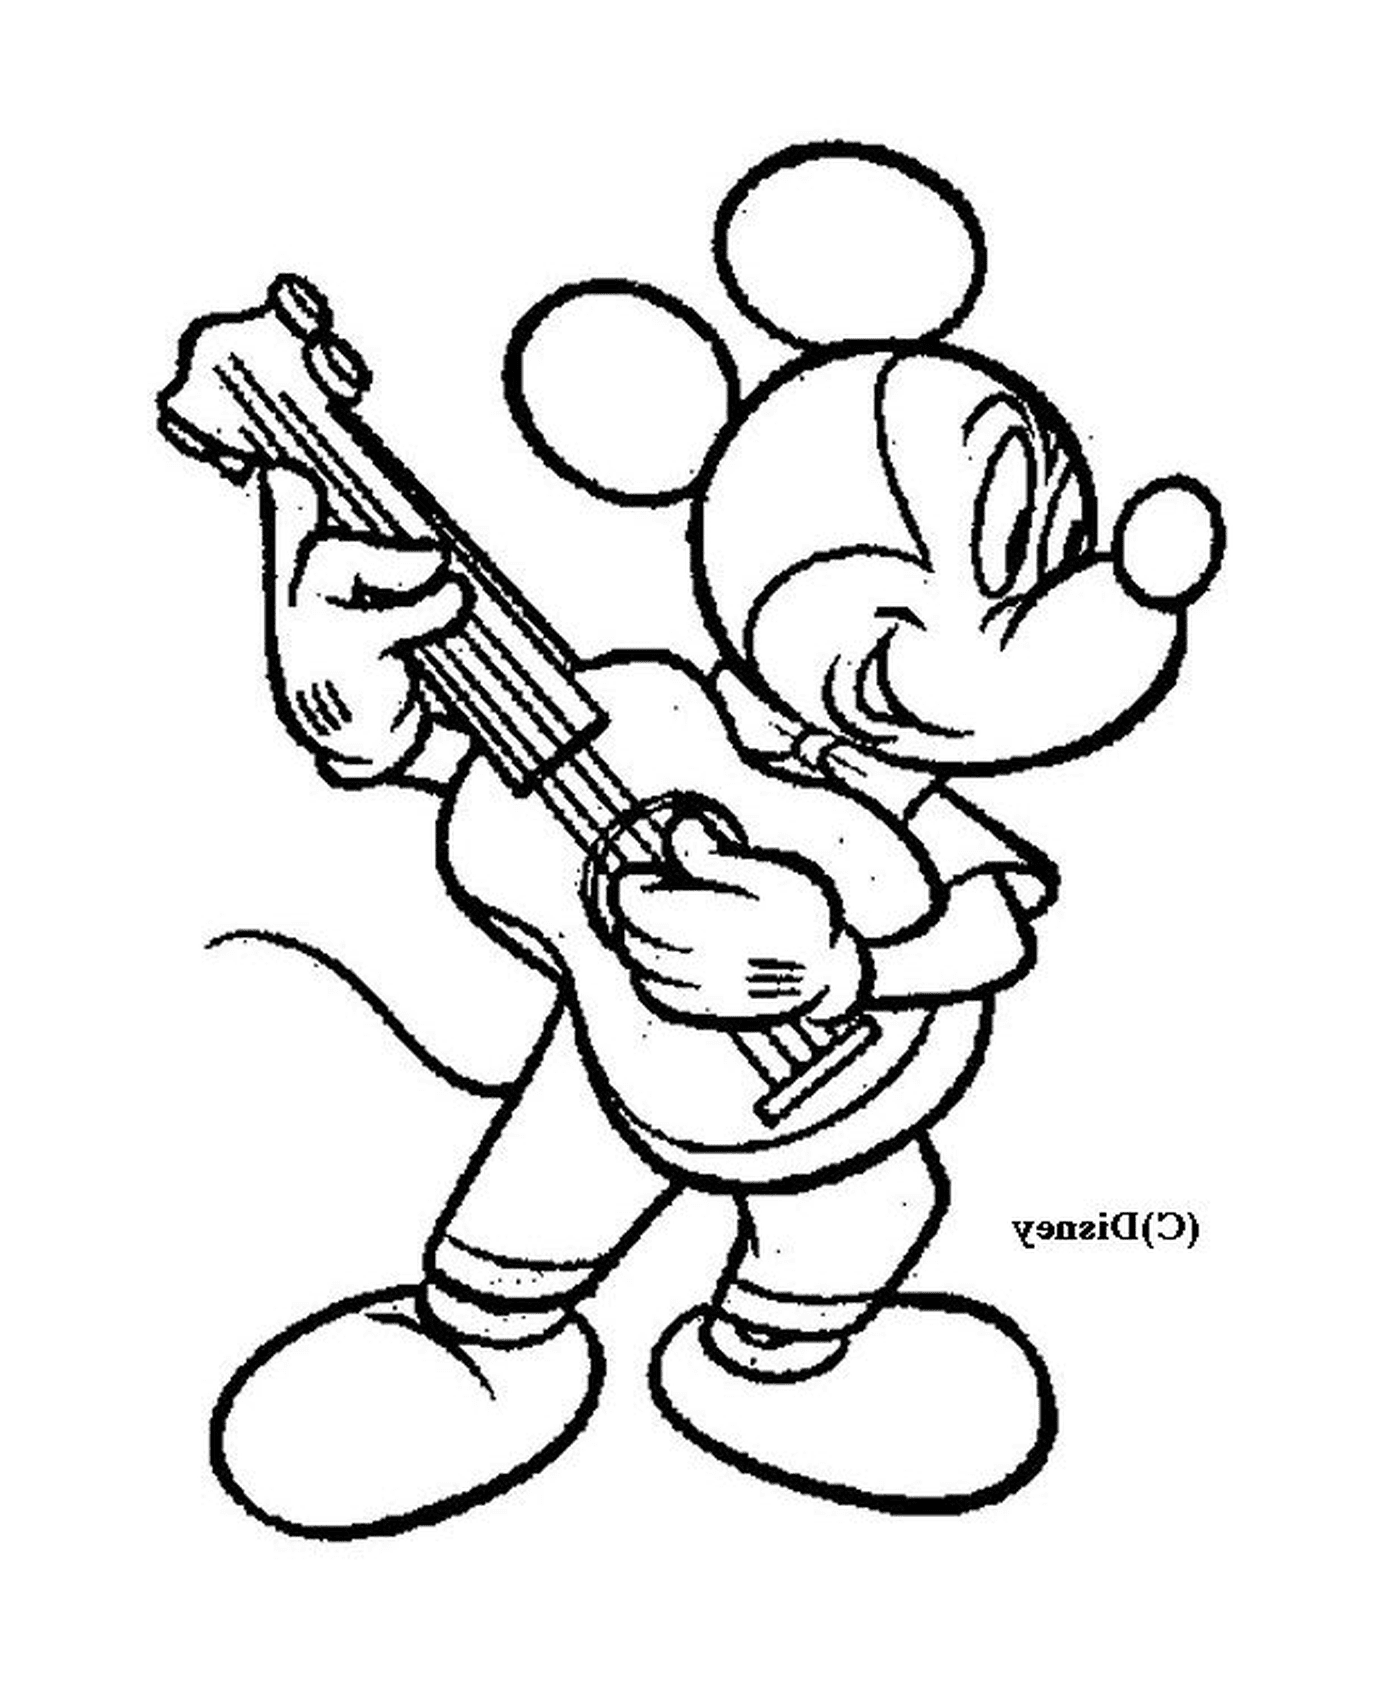  Микки Маус играет на гитаре 